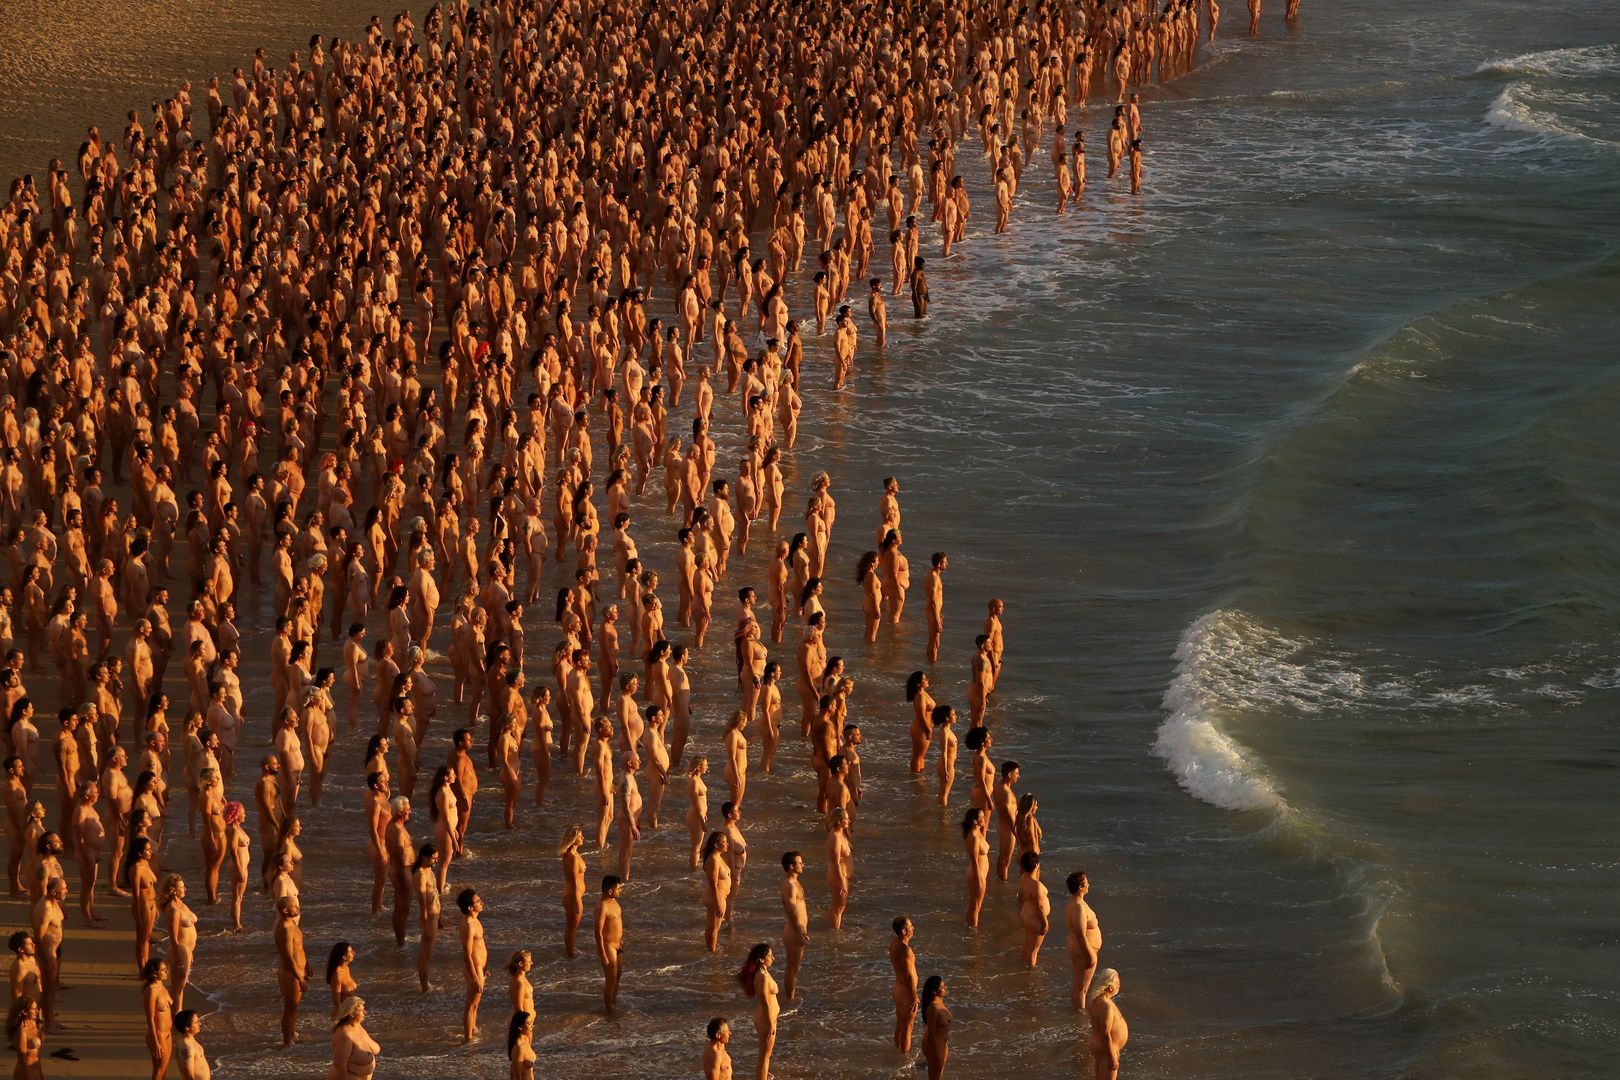 2,5 tys. ludzi nago na plaży. Zdjęcia obiegły sieć